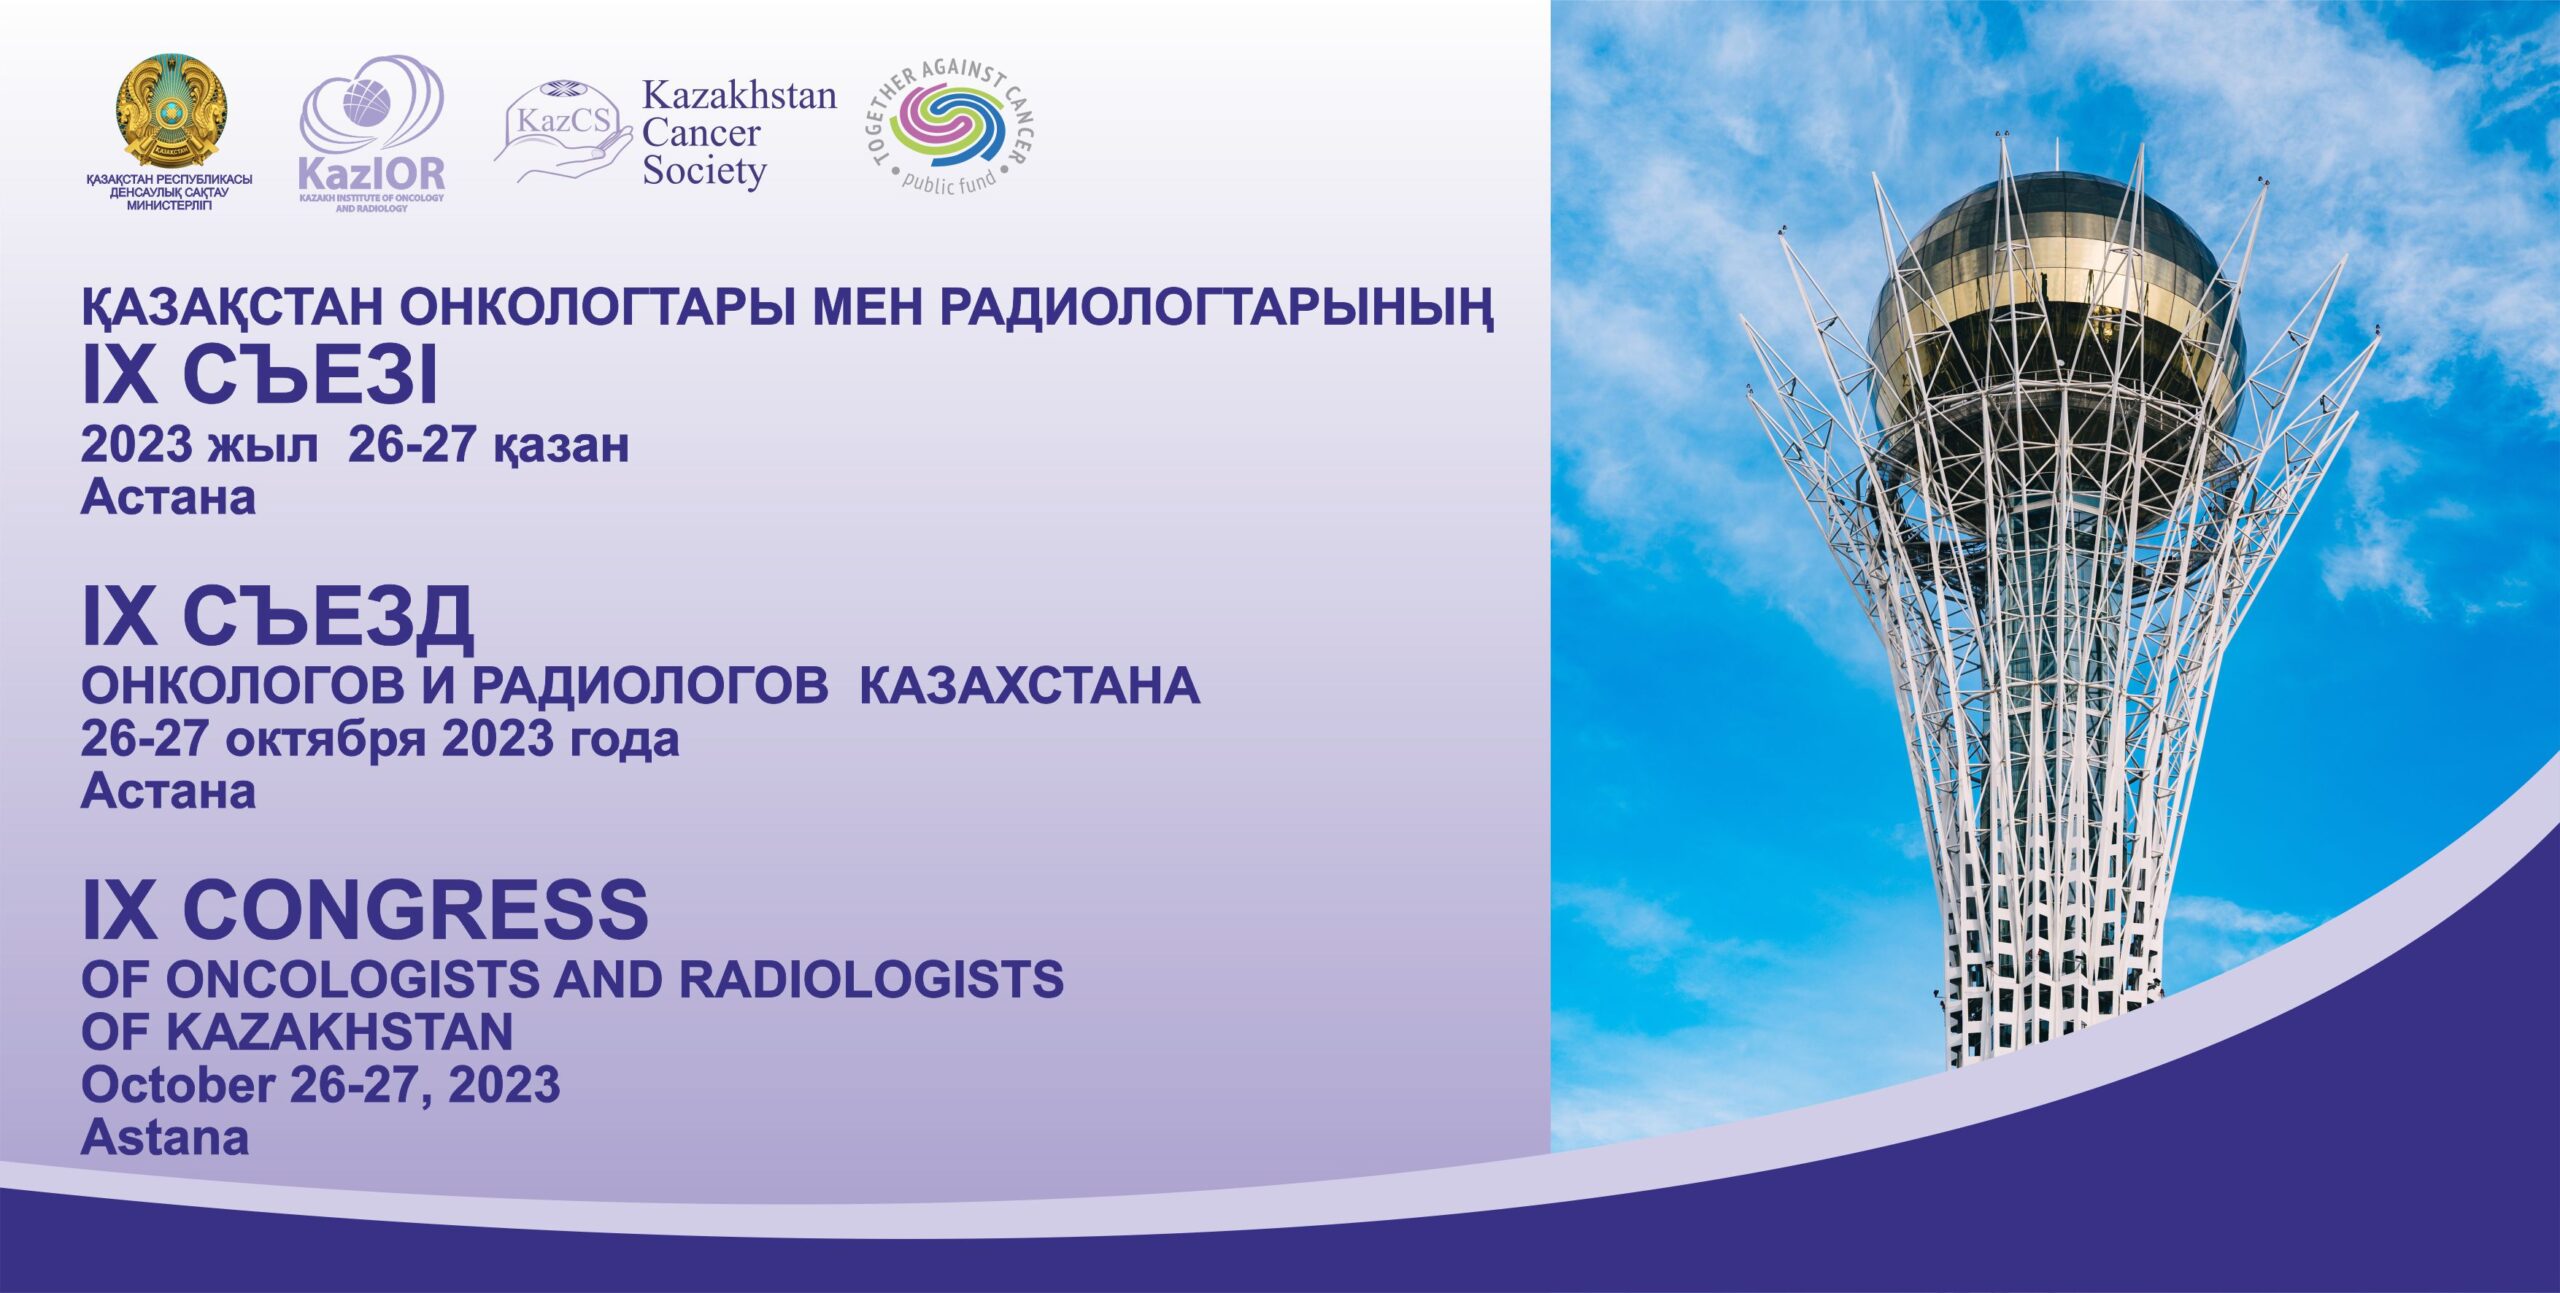 Астанада Қазақстан онкологтары мен радиологтарының IX Съезі өтеді